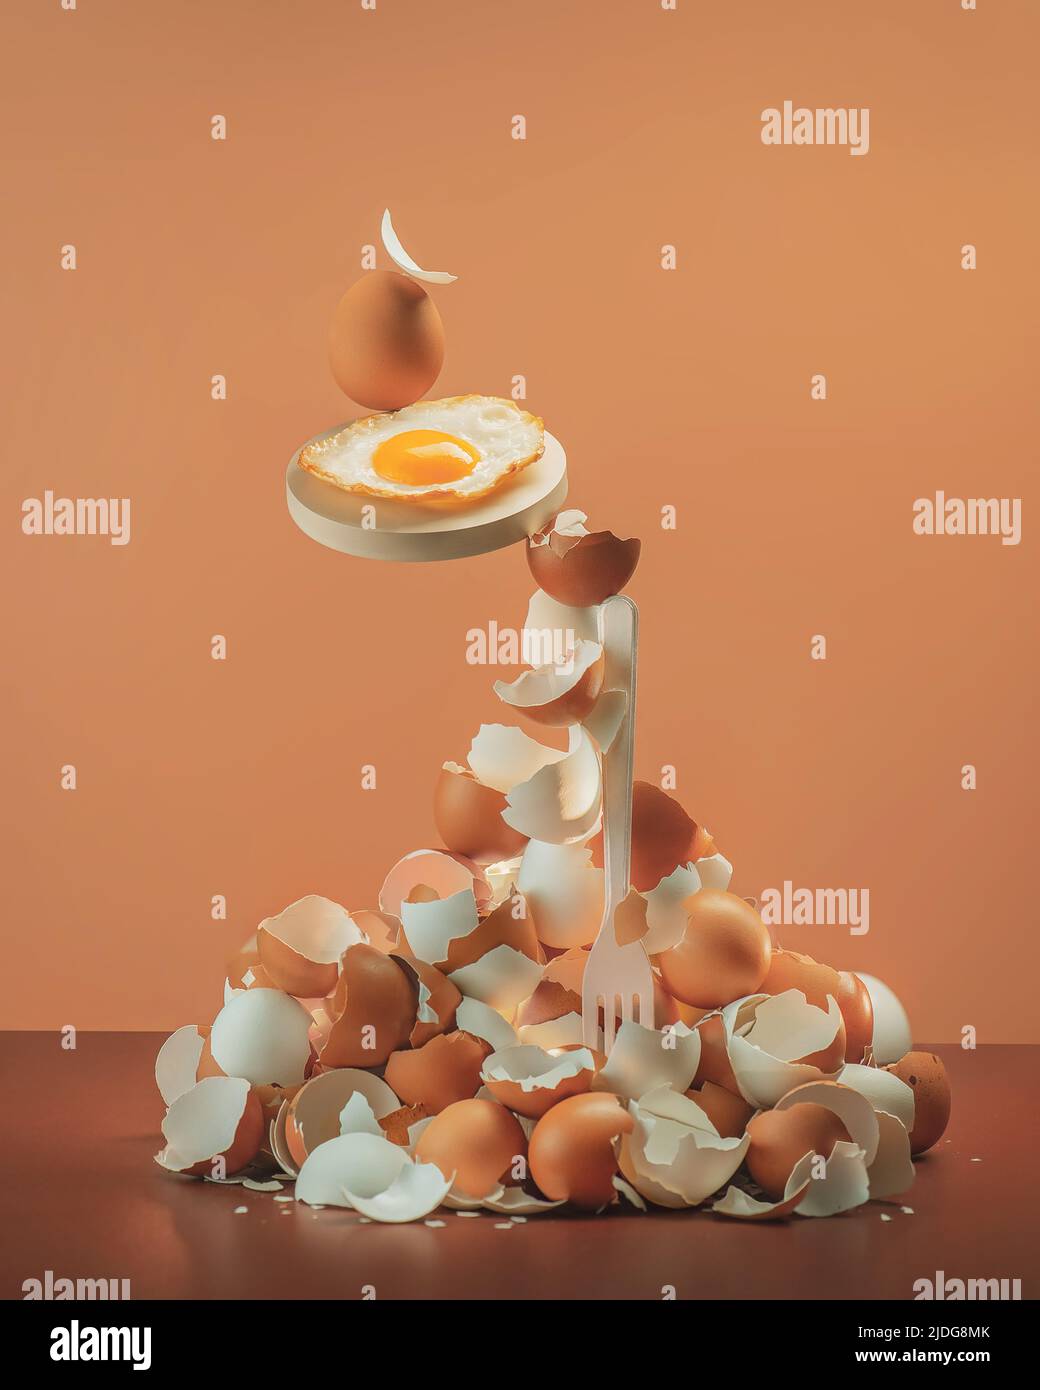 Pila de huevos con huevos fritos balanceándose en un tenedor, equilibrio, foto creativa de comida Foto de stock